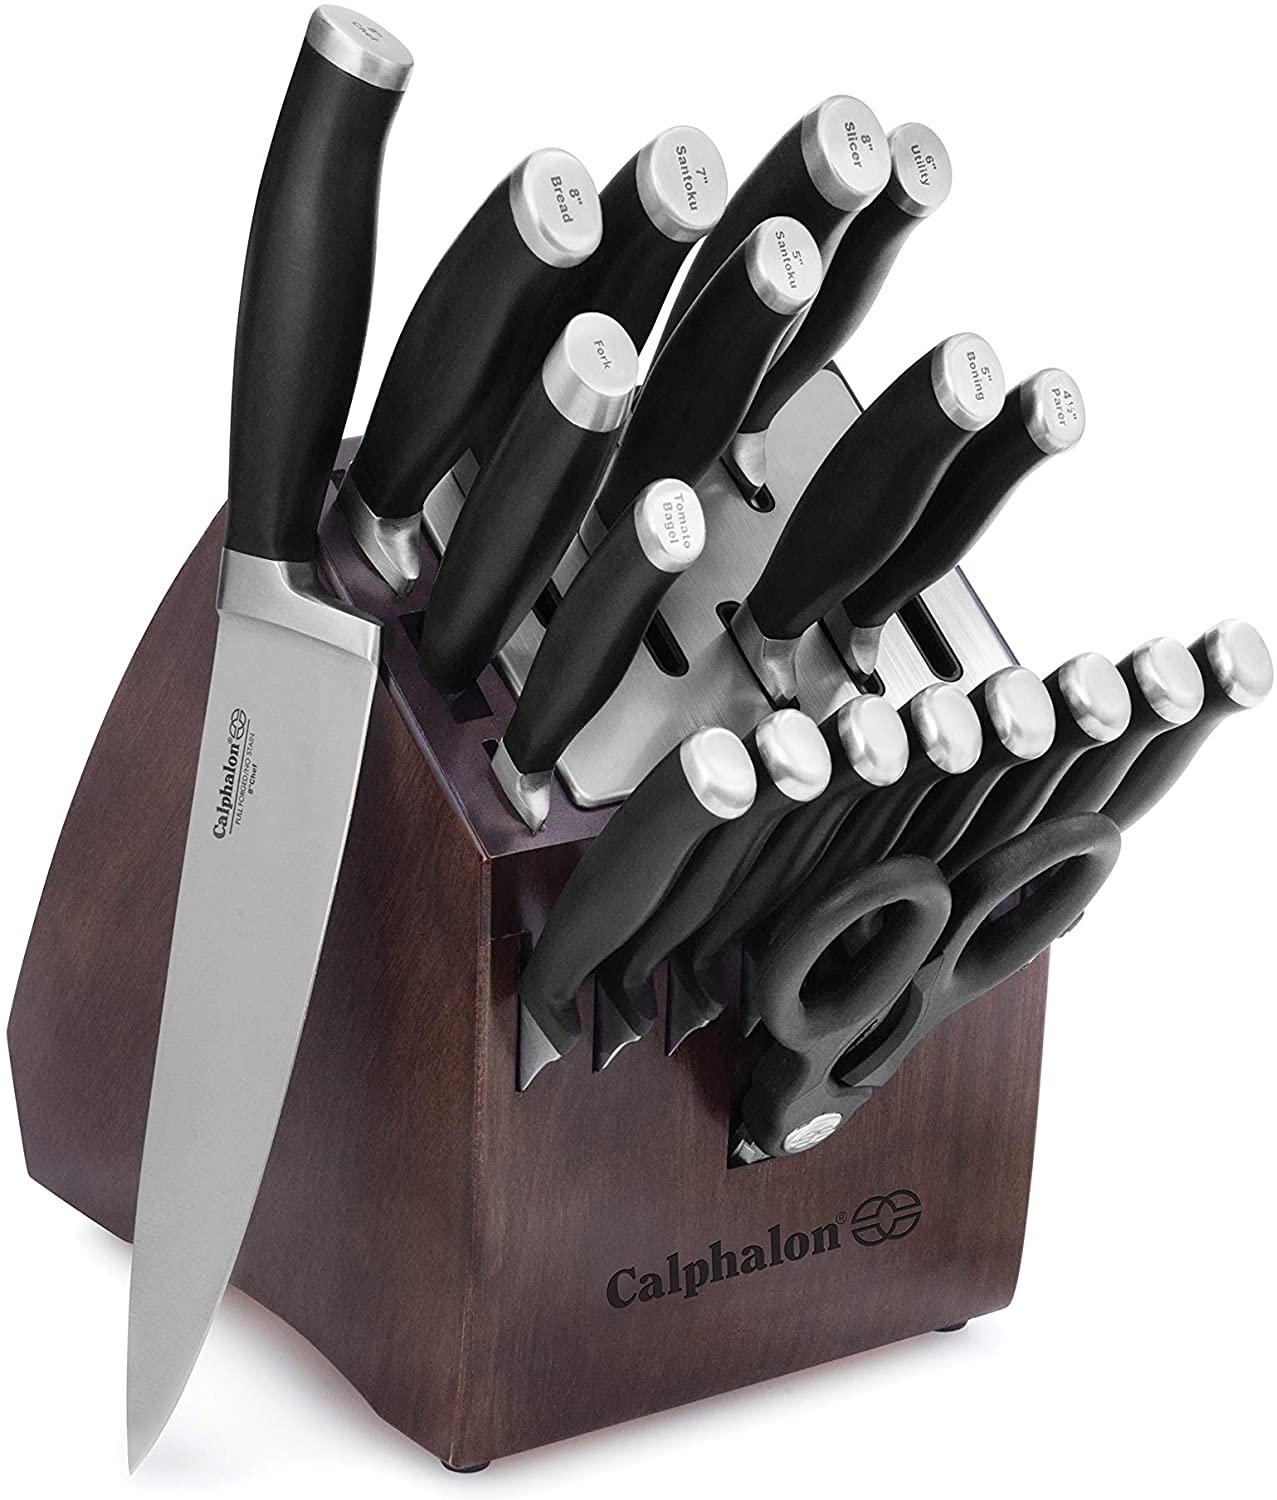 Polished Modern Cutlery Set - 24 PCS – INSPIRA LIFESTYLES